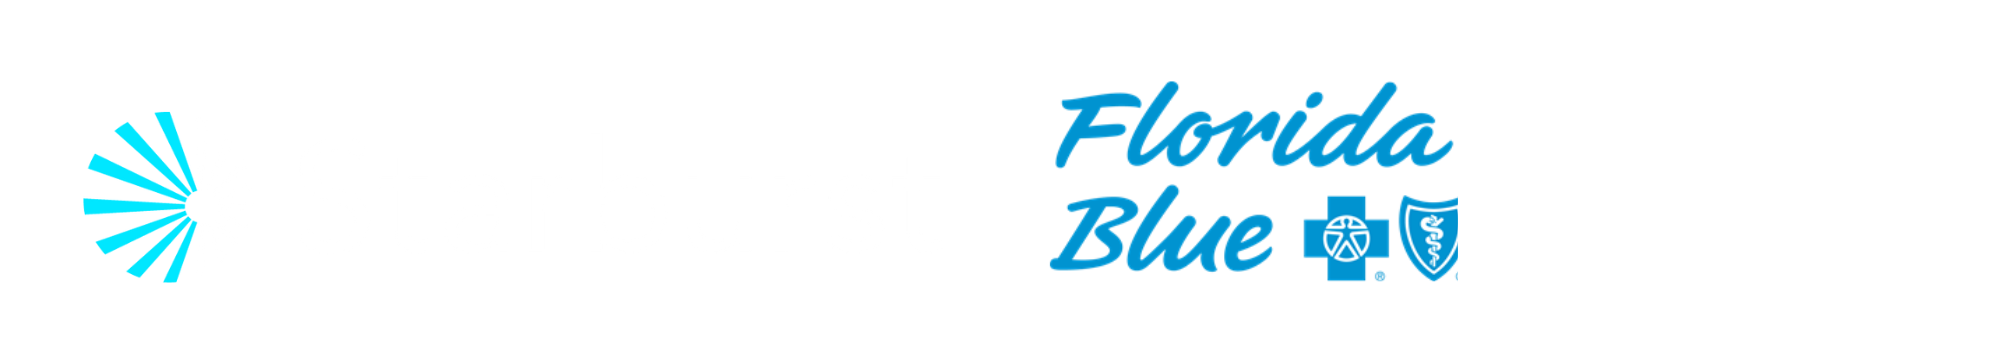 Starburst Day at Florida Blue | Starburst